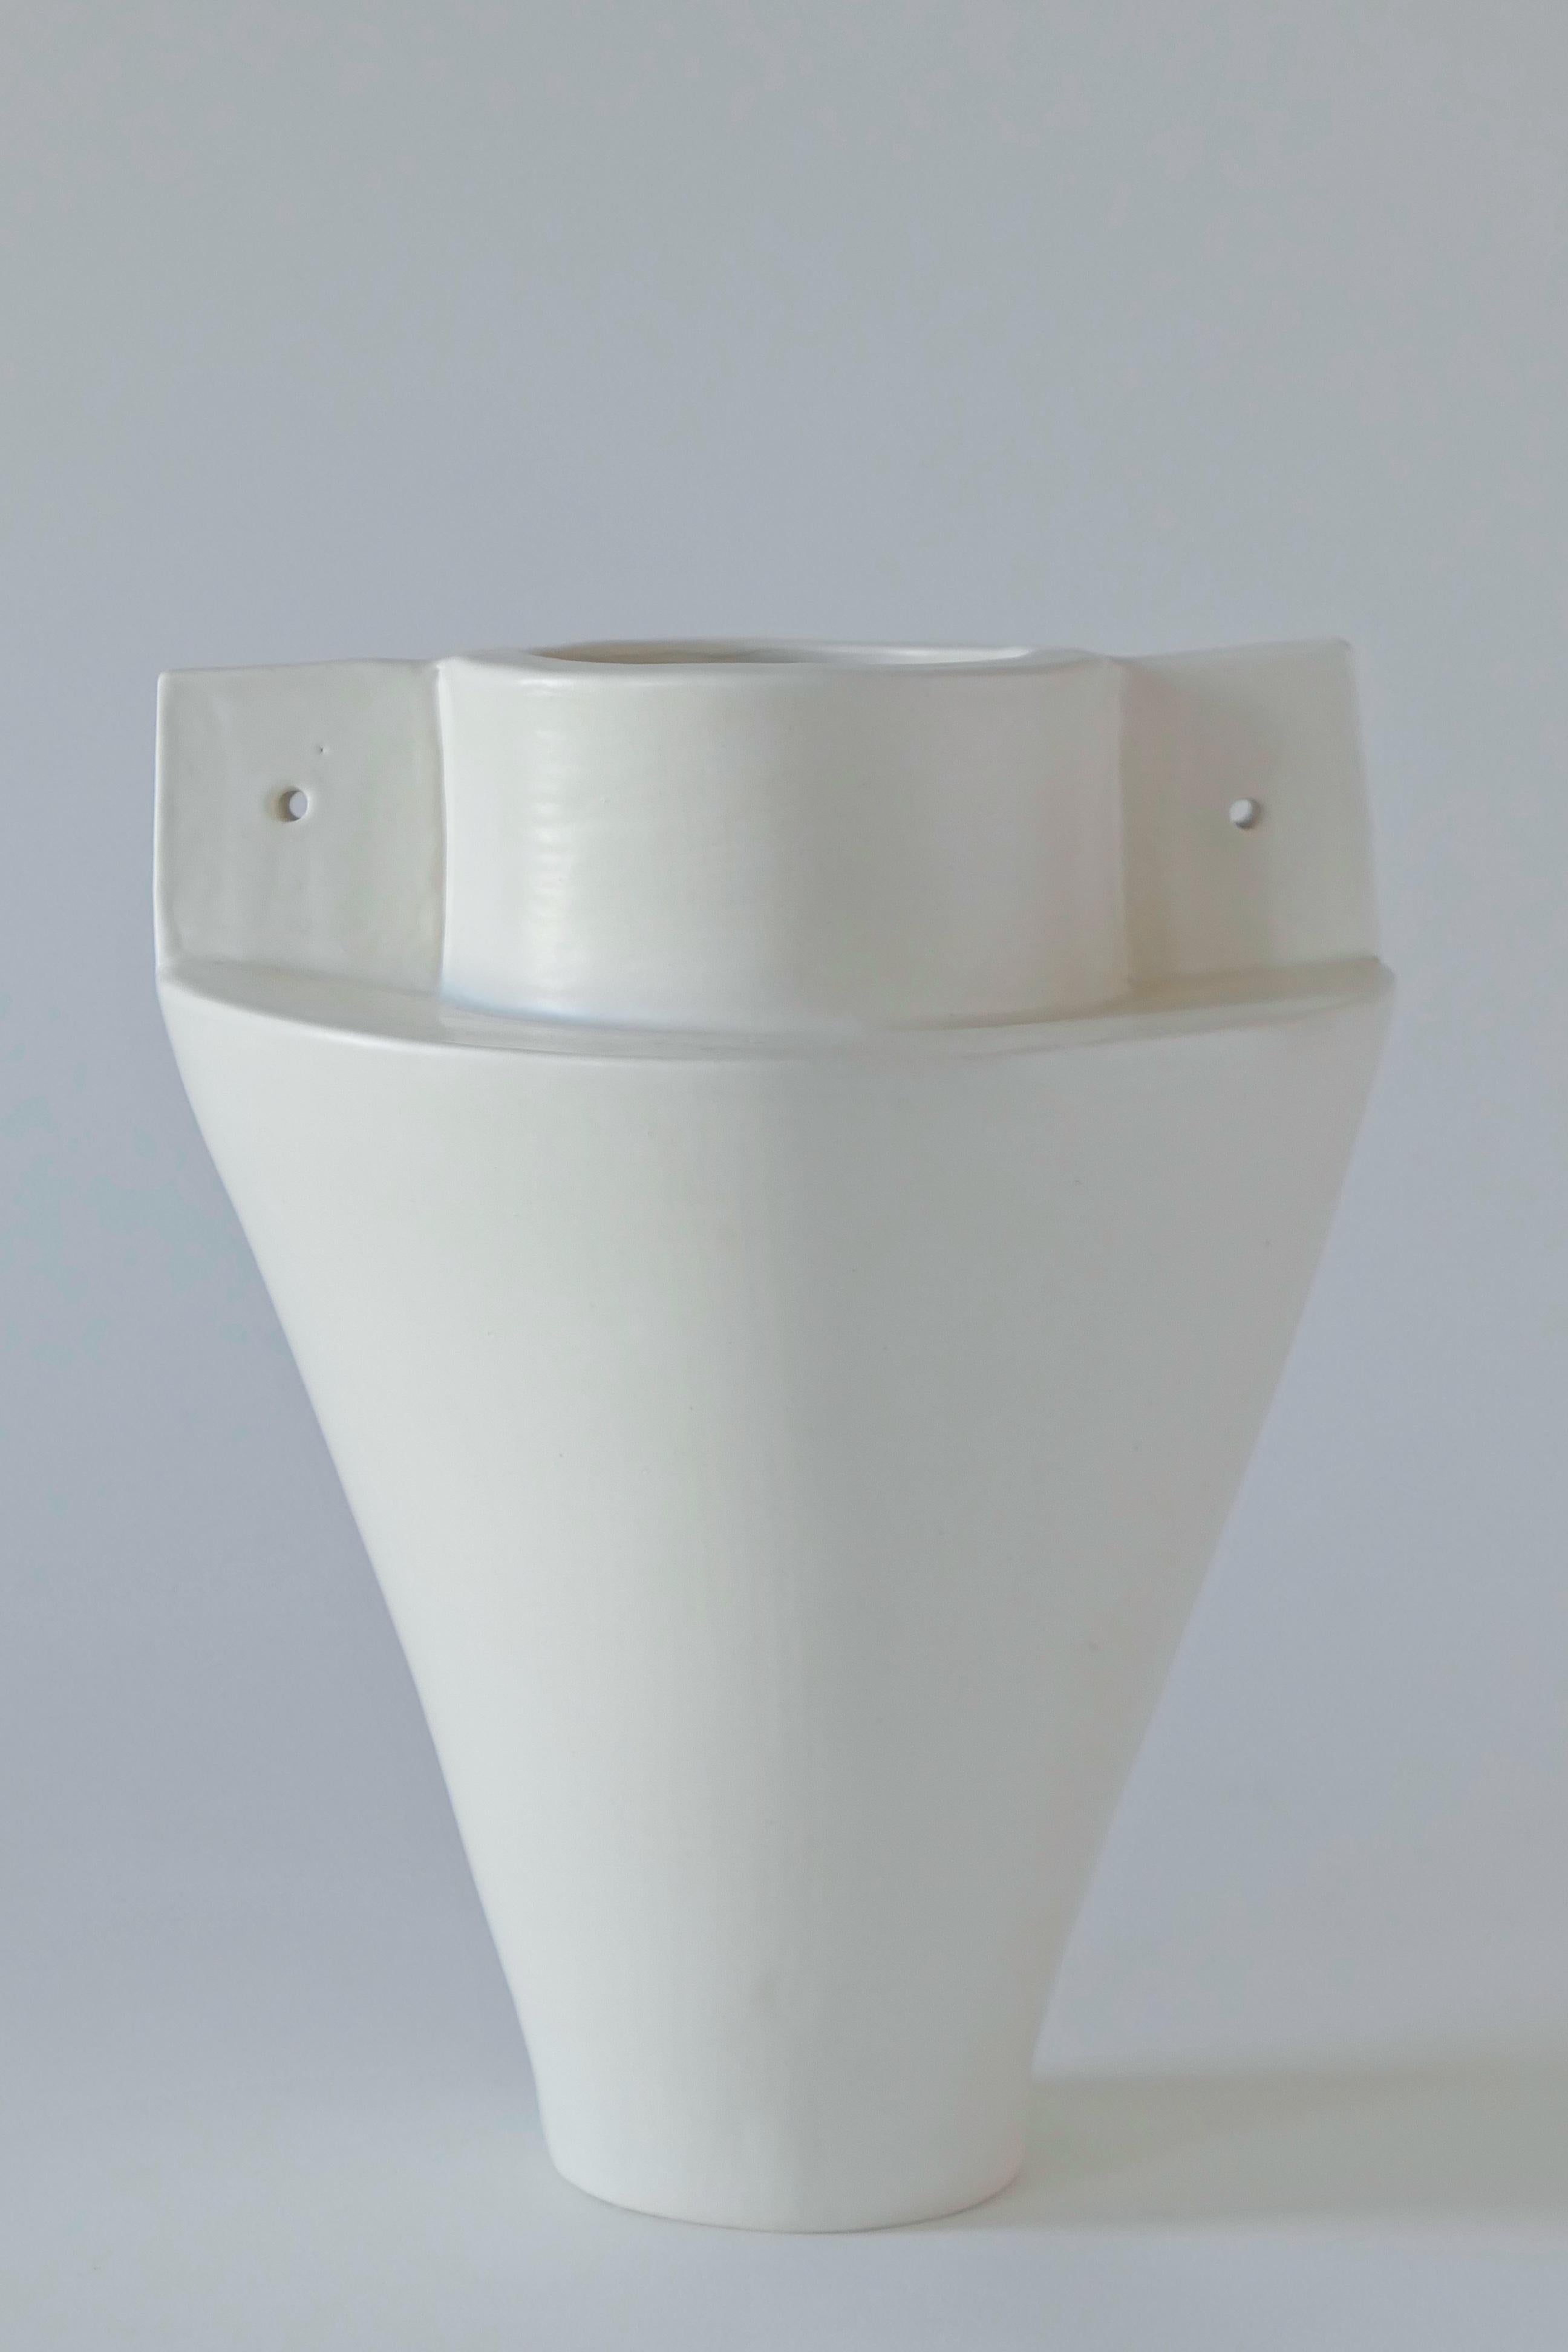 Vase aus weißem Steingut mit weicher, weißer Glasur. Diese Vase wird in Handarbeit aus Tonplatten hergestellt.

Karina Vieira ist eine in Brooklyn ansässige Keramikerin, die sich auf handgefertigte Gefäße konzentriert. 

Ihr Werk bezieht sich auf